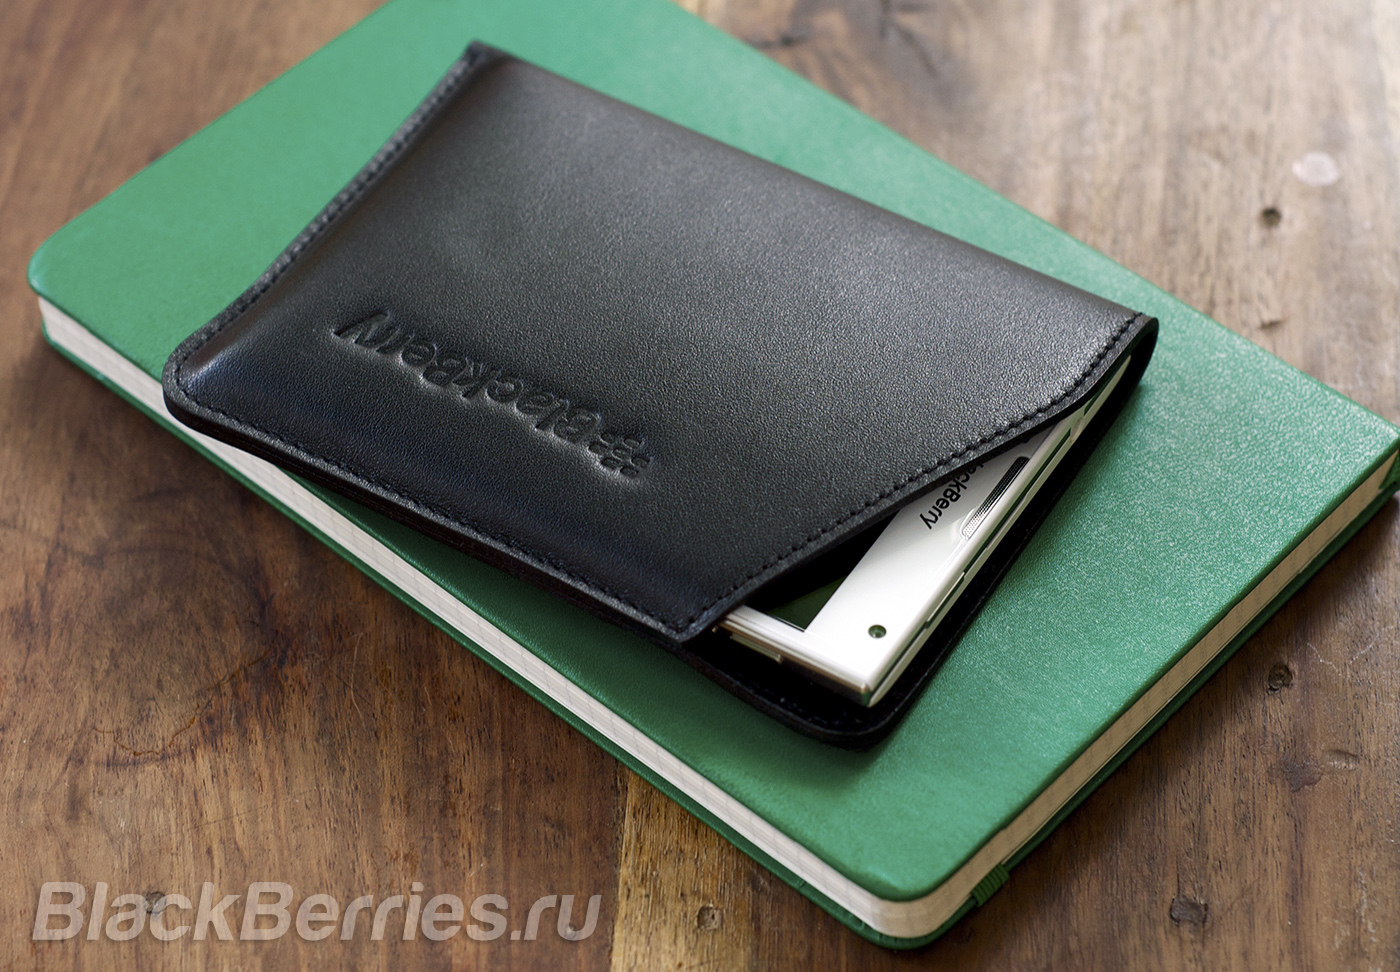 BlackBerry-Passport-Case-24